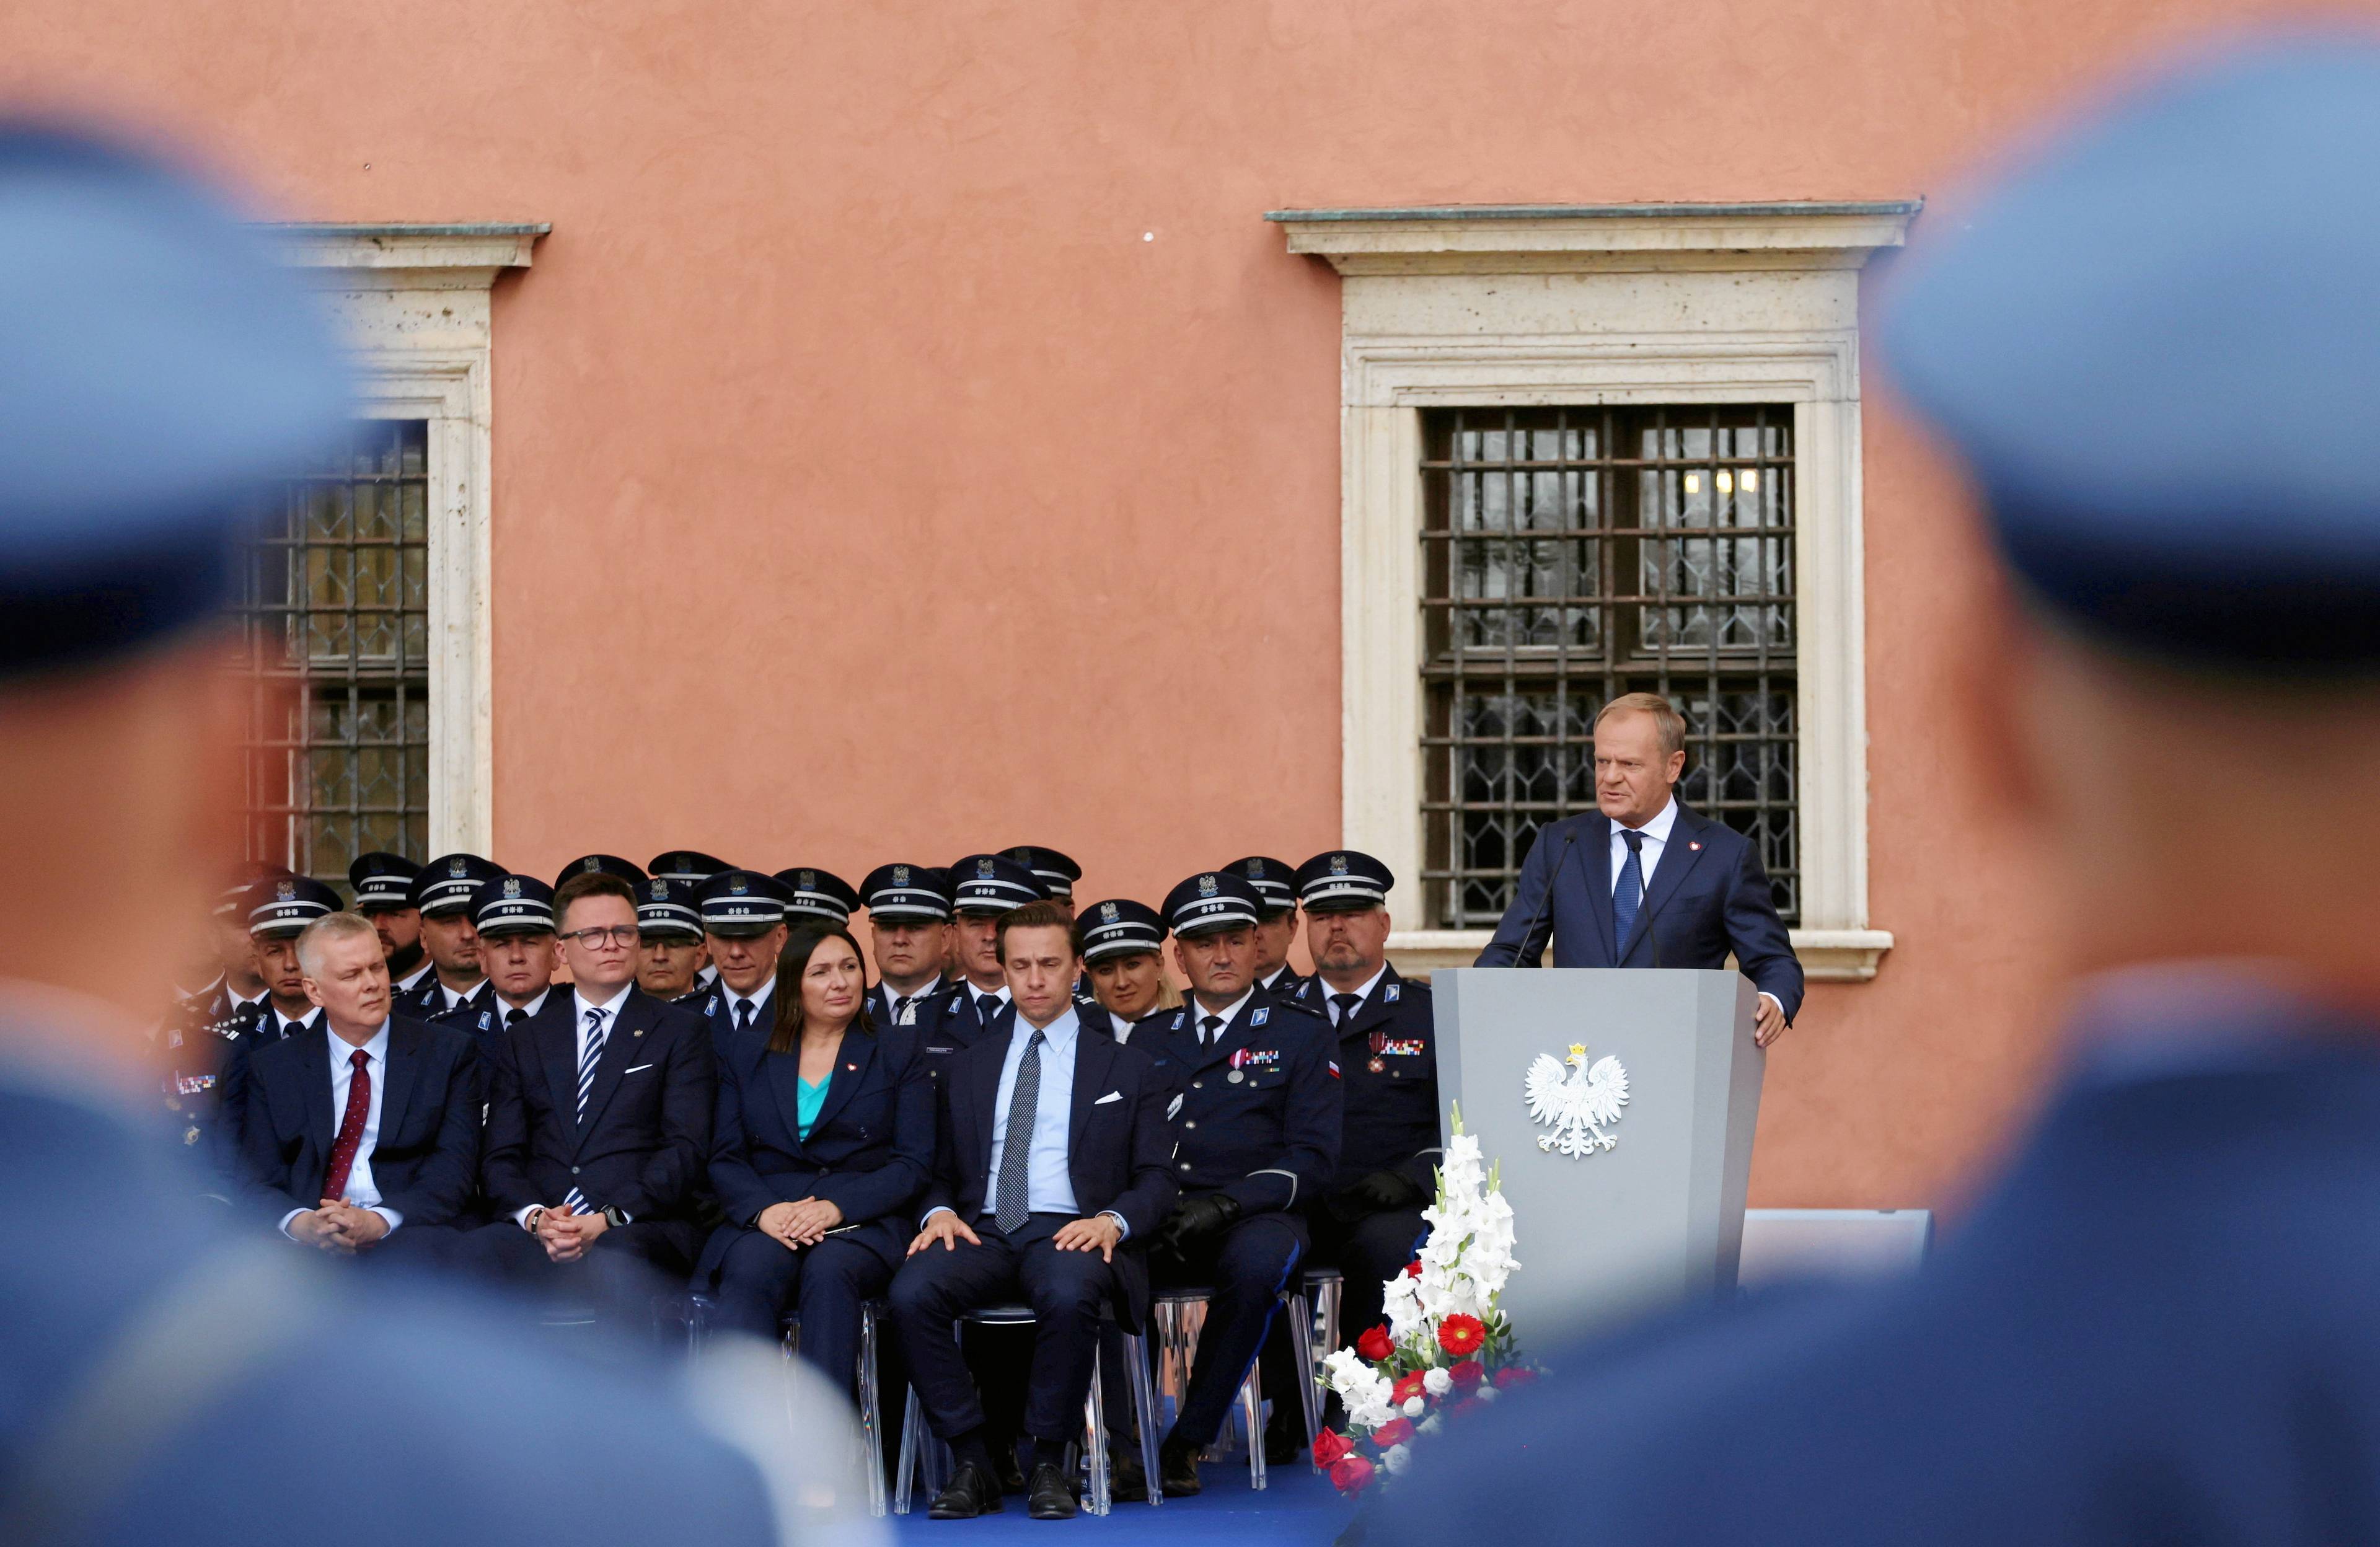 Mężczyzna w granatowym garniturze stoi za mównicą, obok niego trzy rzędy krzeseł, na których zasiadają oficjele w garniturach oraz policyjnych mundurach, na pierwszym planie zdjęcia rozmazany zarys dwóch mężczyzn w niebieskich mundurach i policyjnych czapkach.